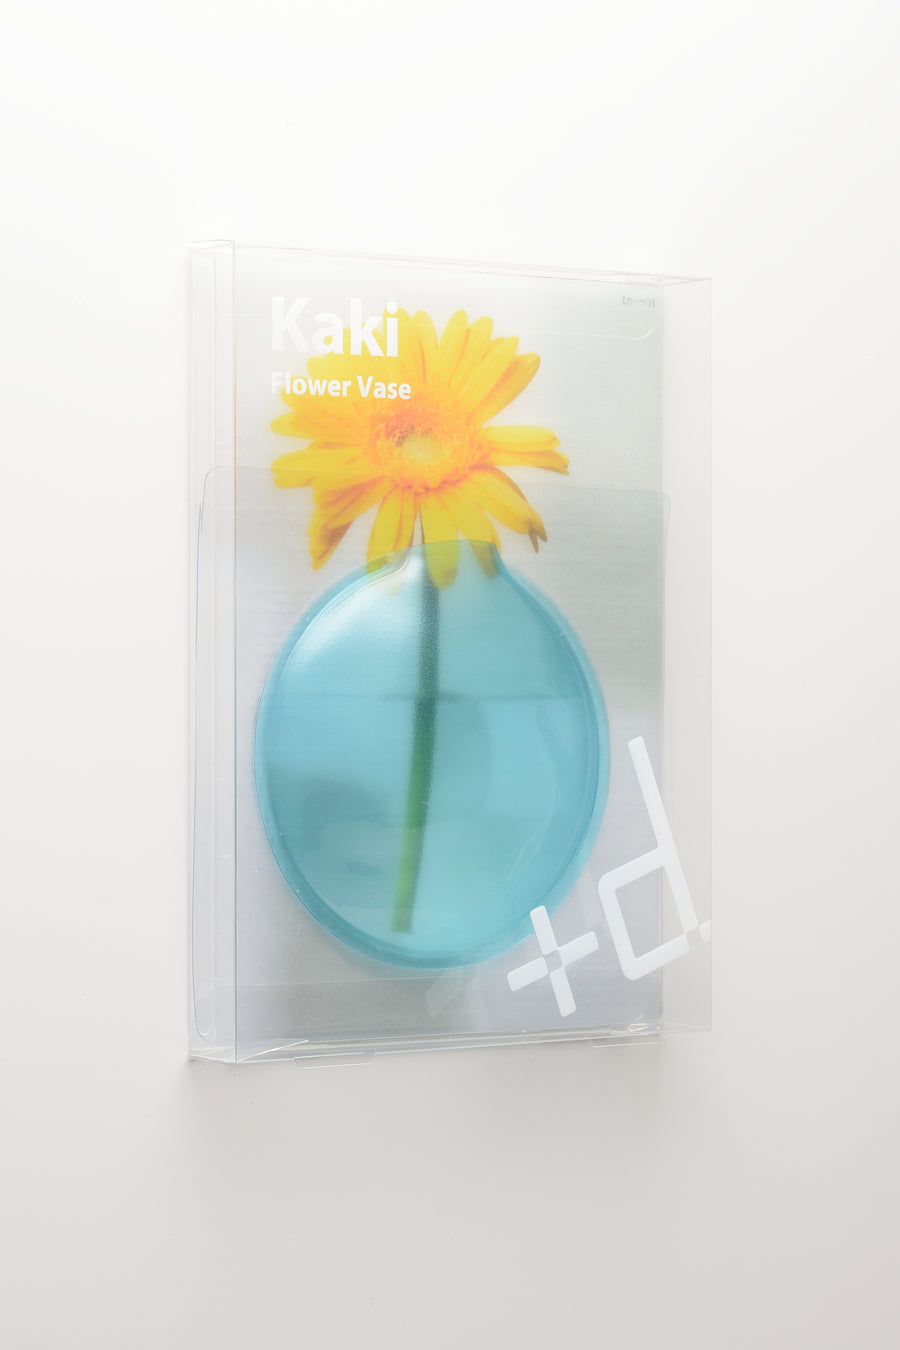 Kaki flower vase